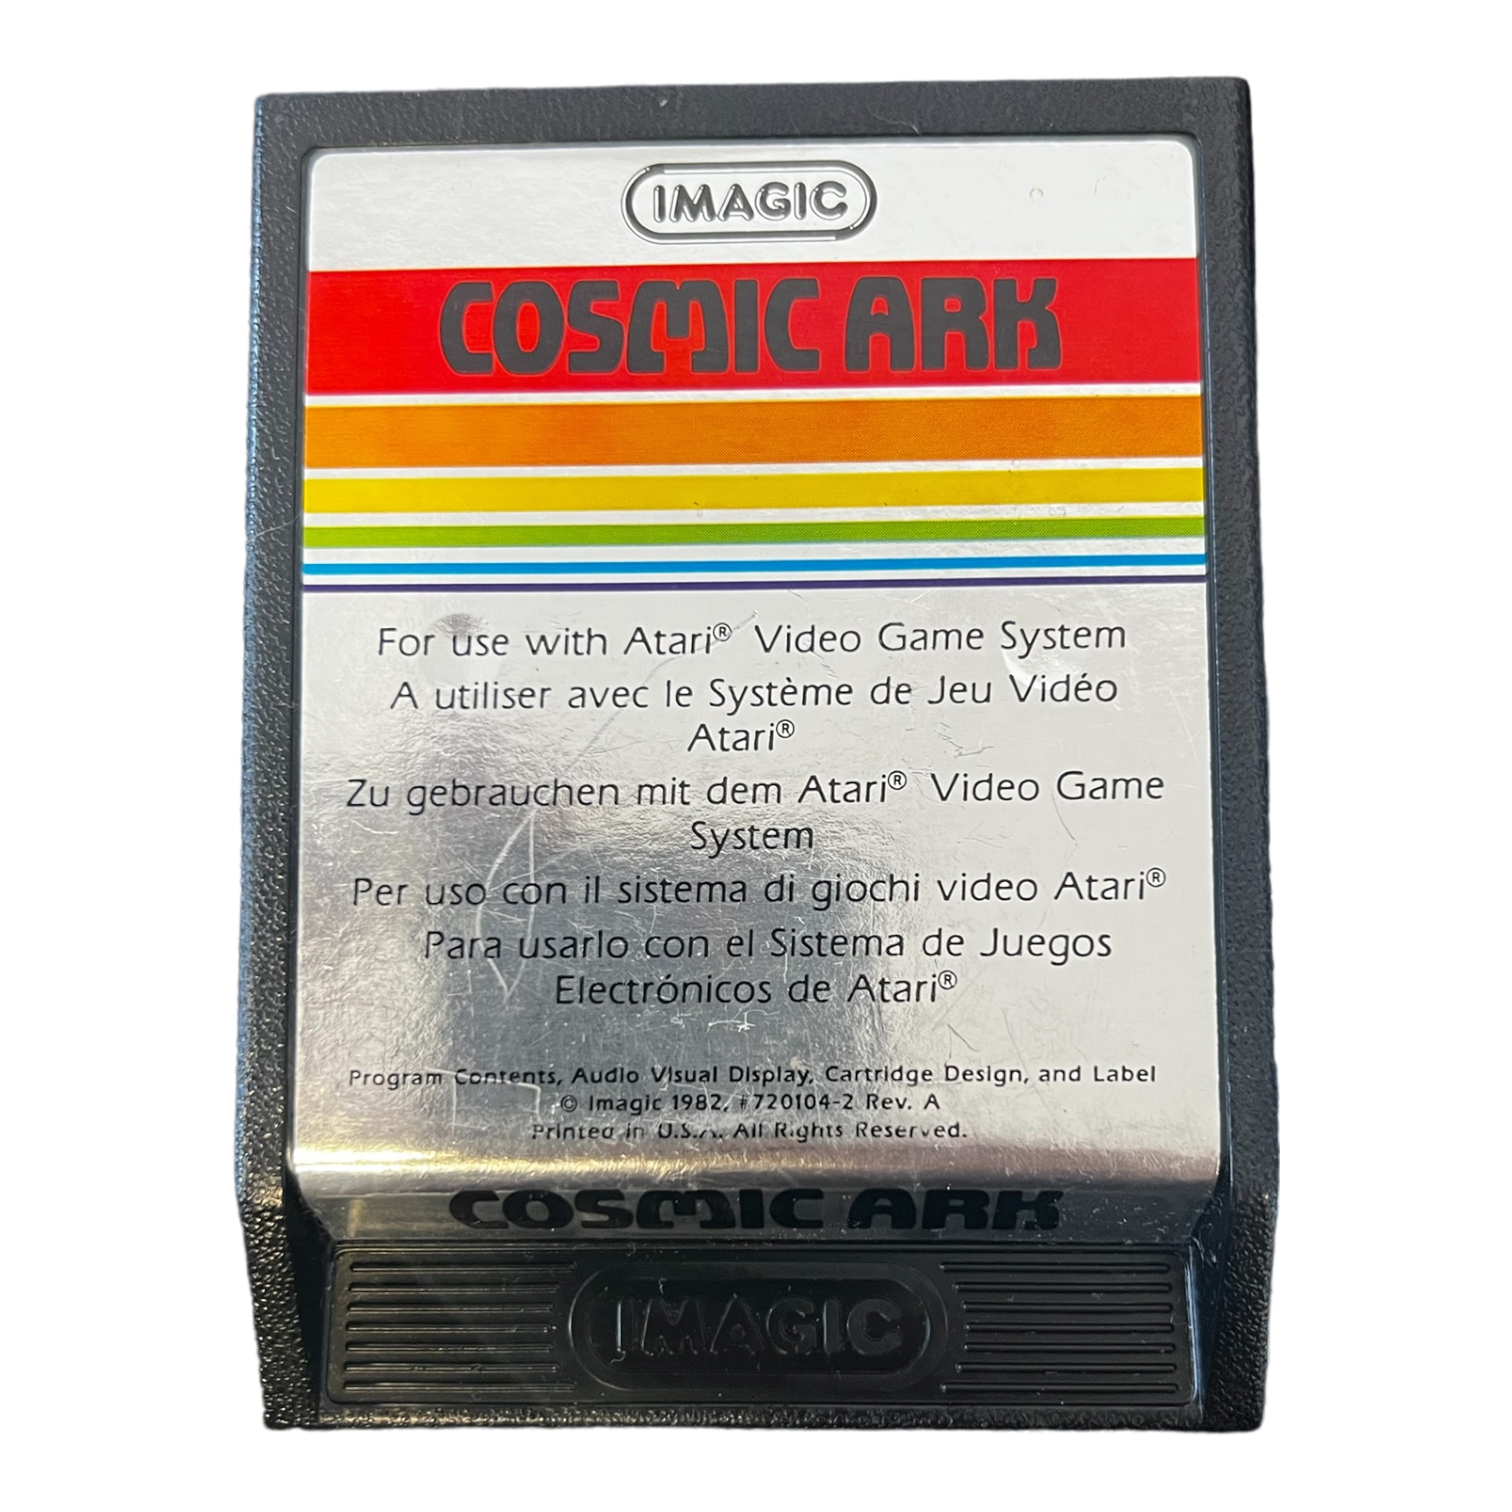 klep Onrustig cassette Cosmic ark (Losse Cassette) voor de Atari 2600 - Reway.nl